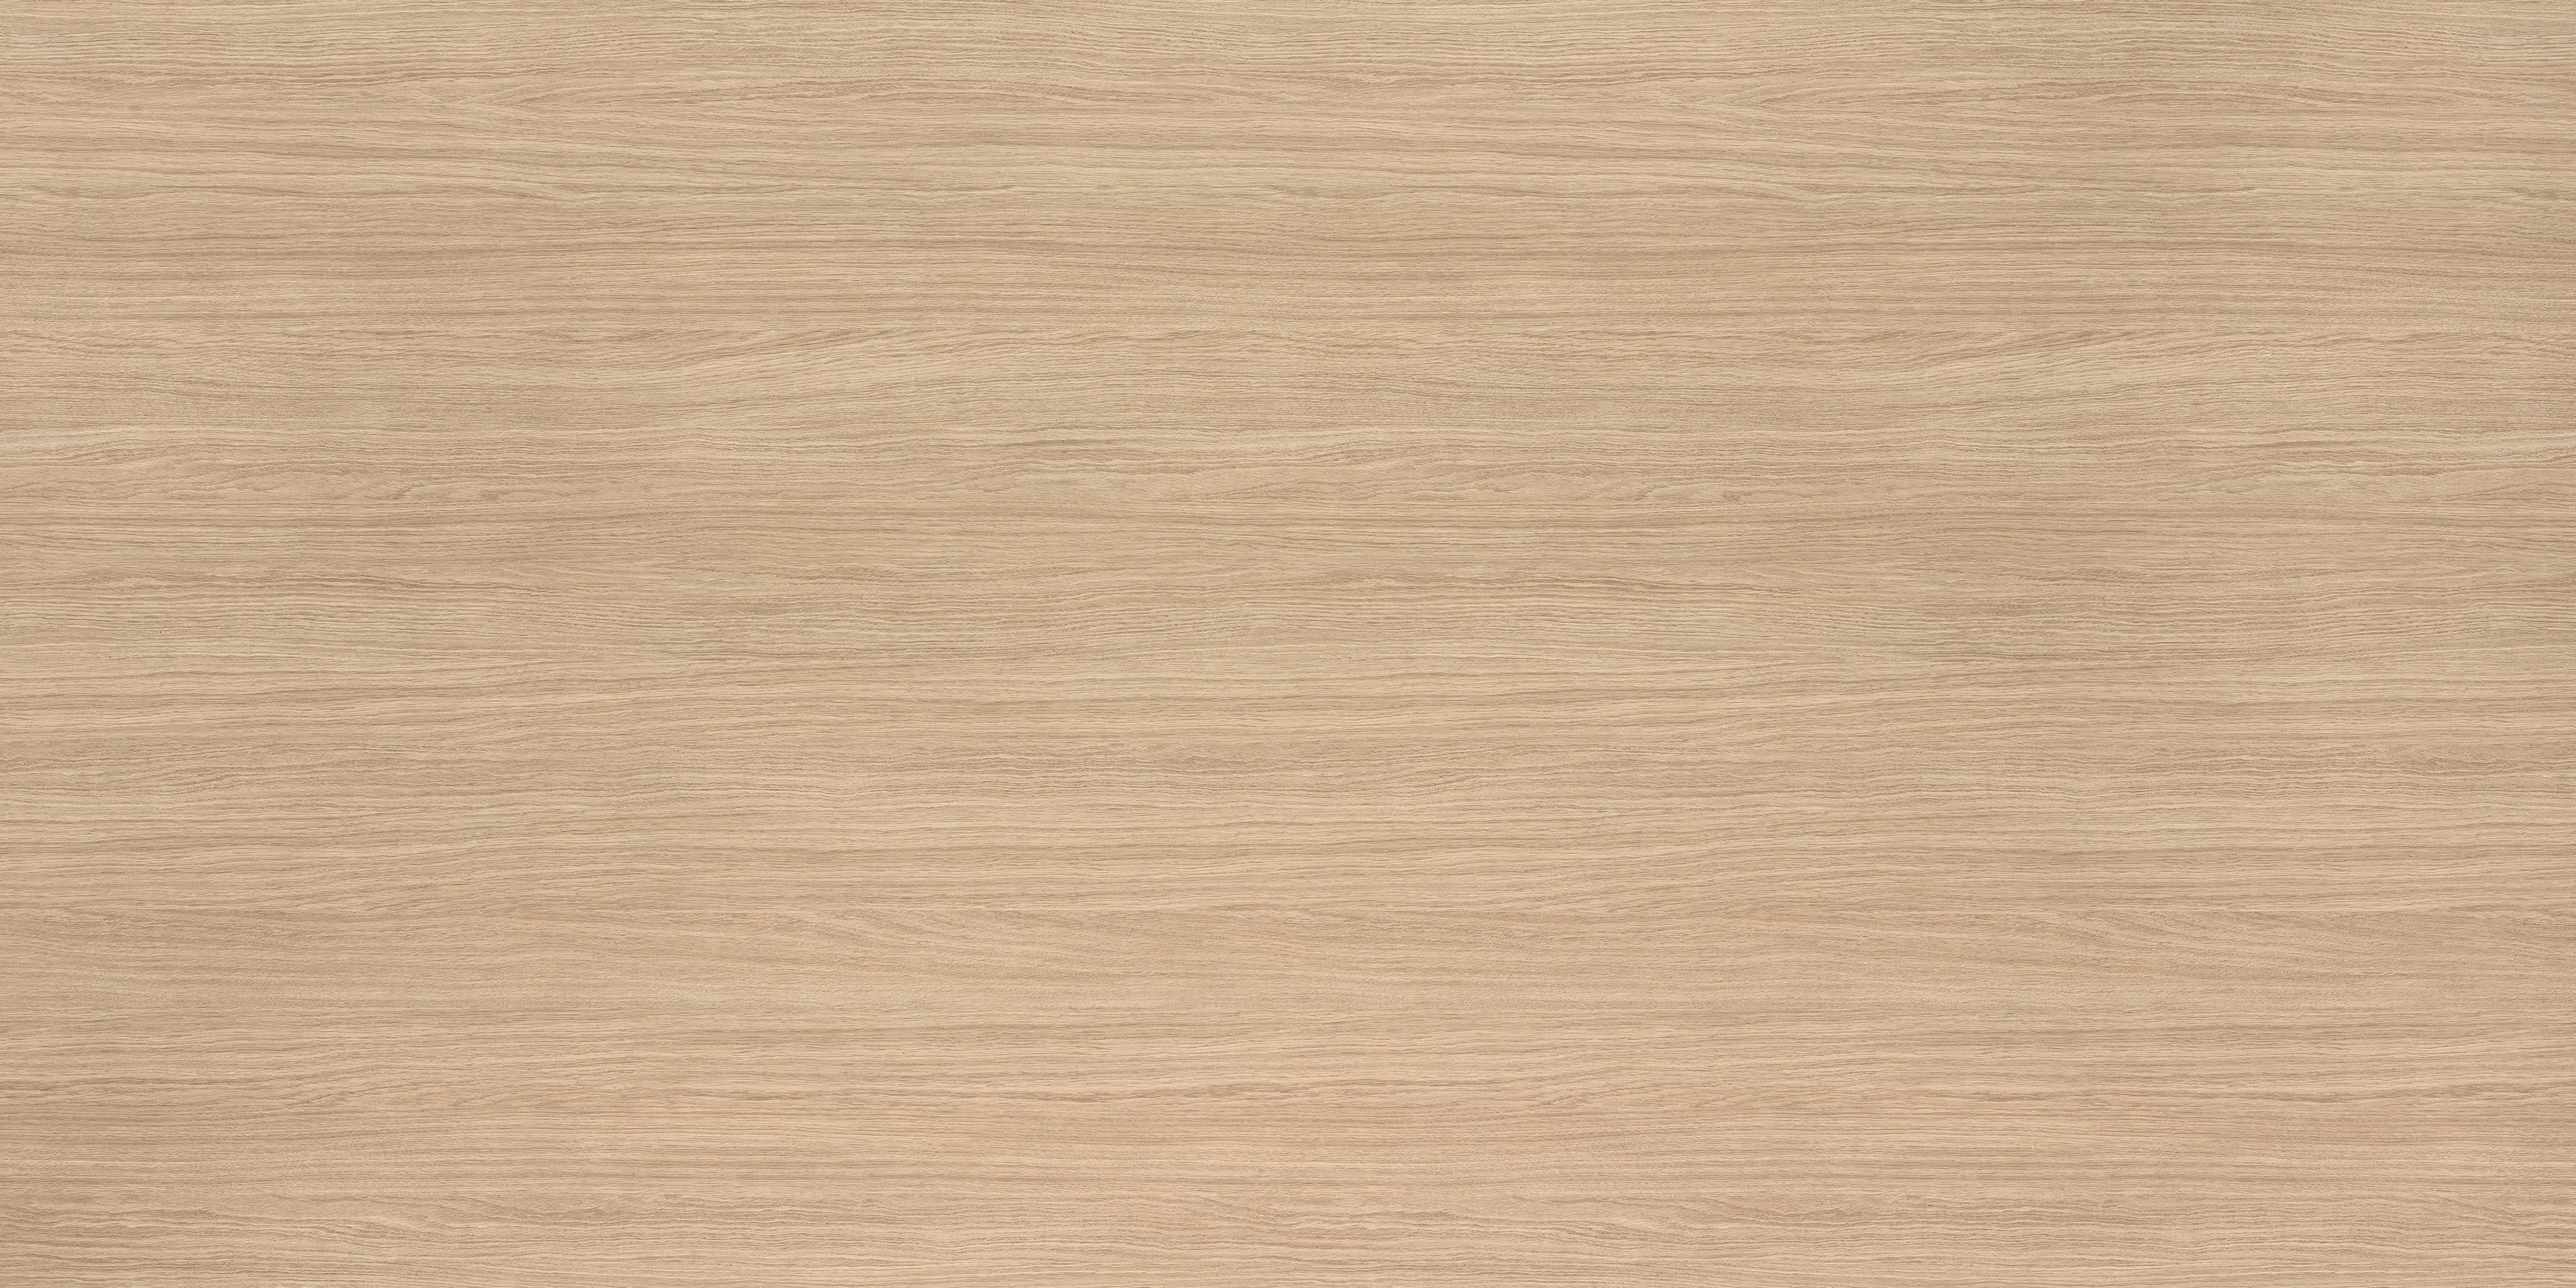 TSFC009 in natural oak furniture board